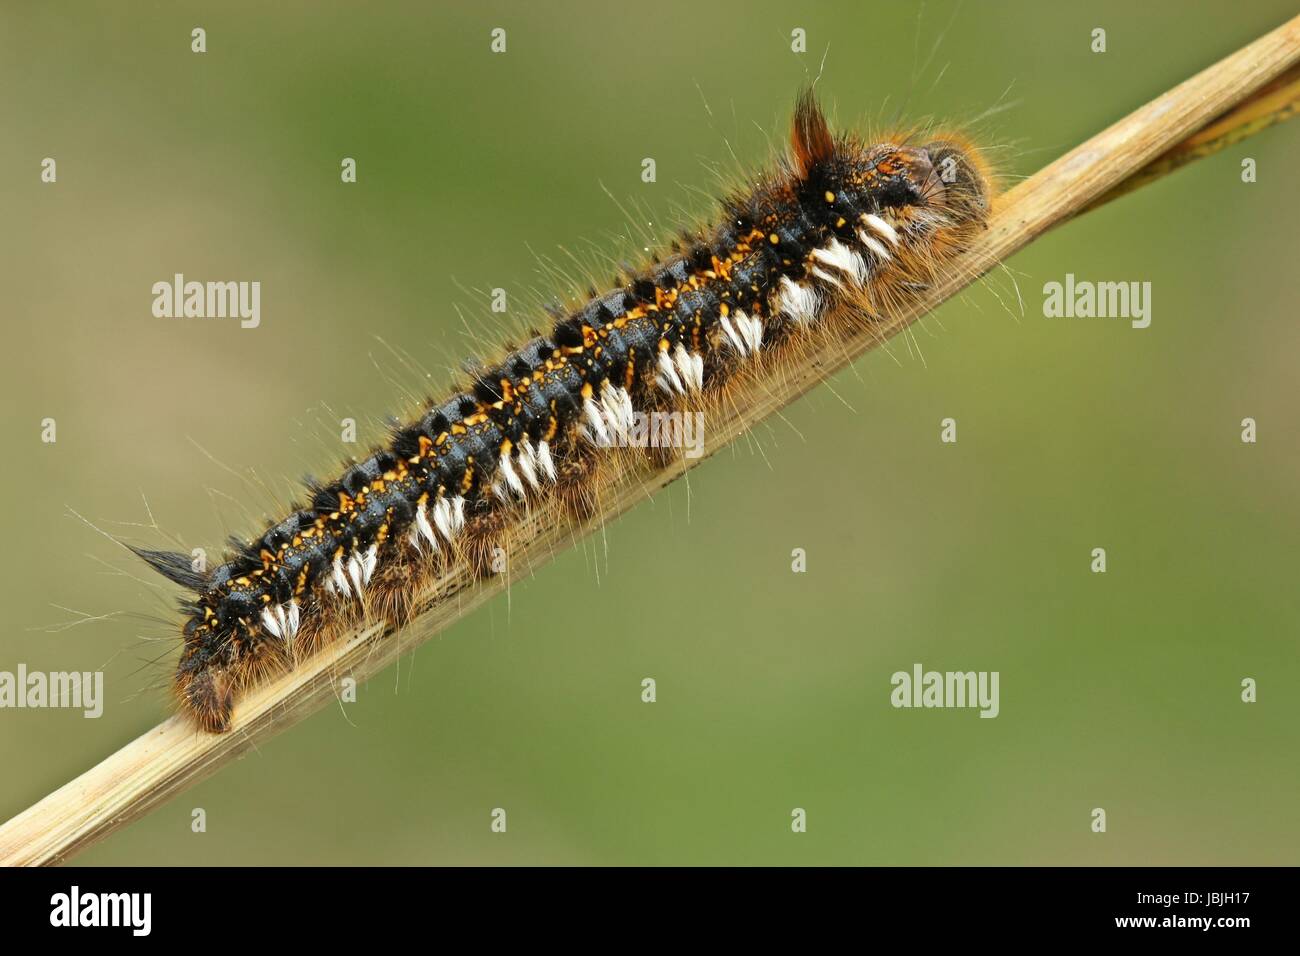 drinker,caterpillar grass hen (euthrix potatoria) Stock Photo